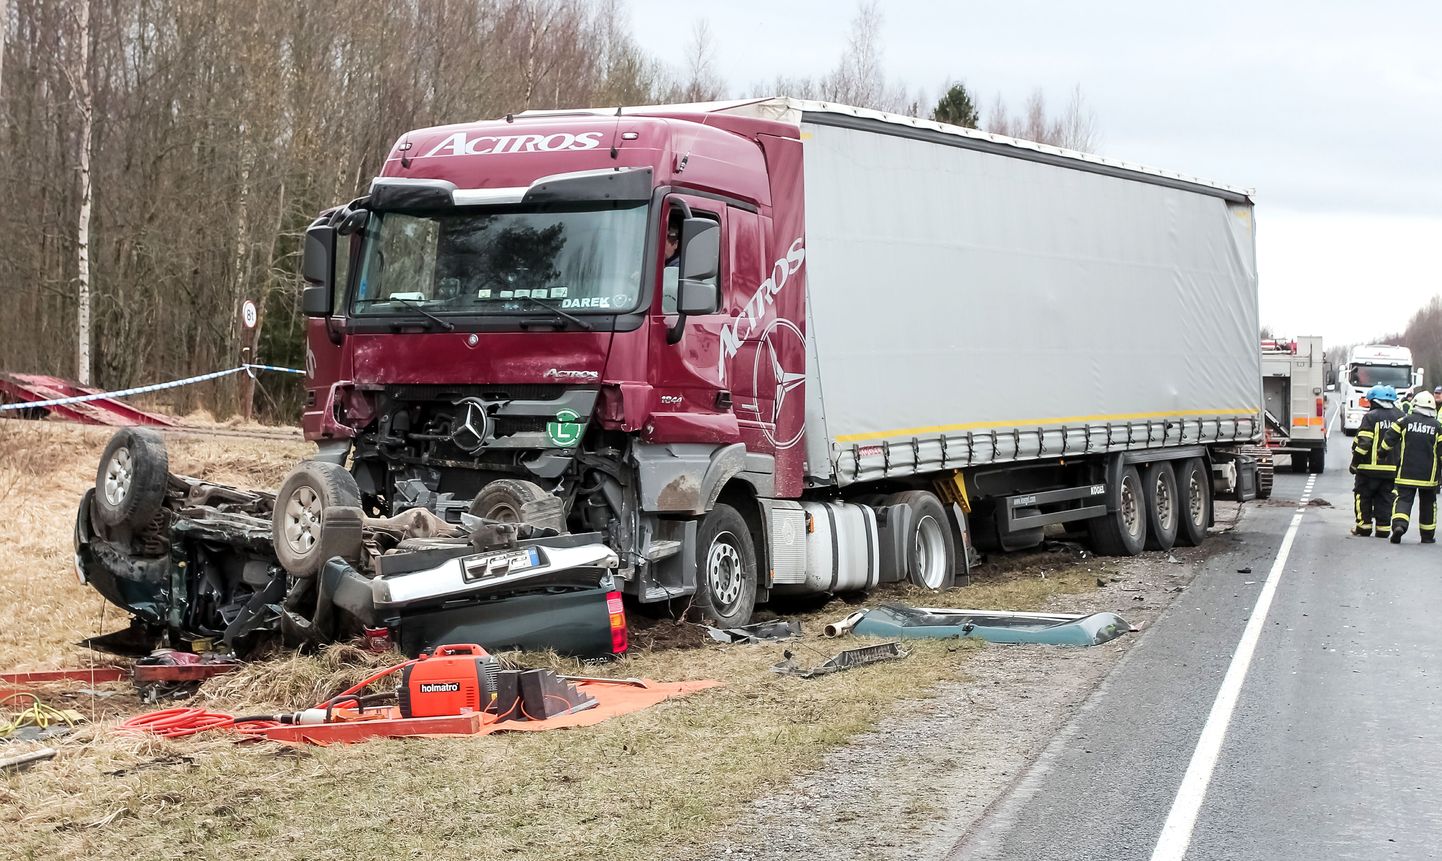 Häädemeeste lähistel Penu külas Tallinna-Pärnu-Ikla maanteel juhtus traagiline liiklusõnnetus.